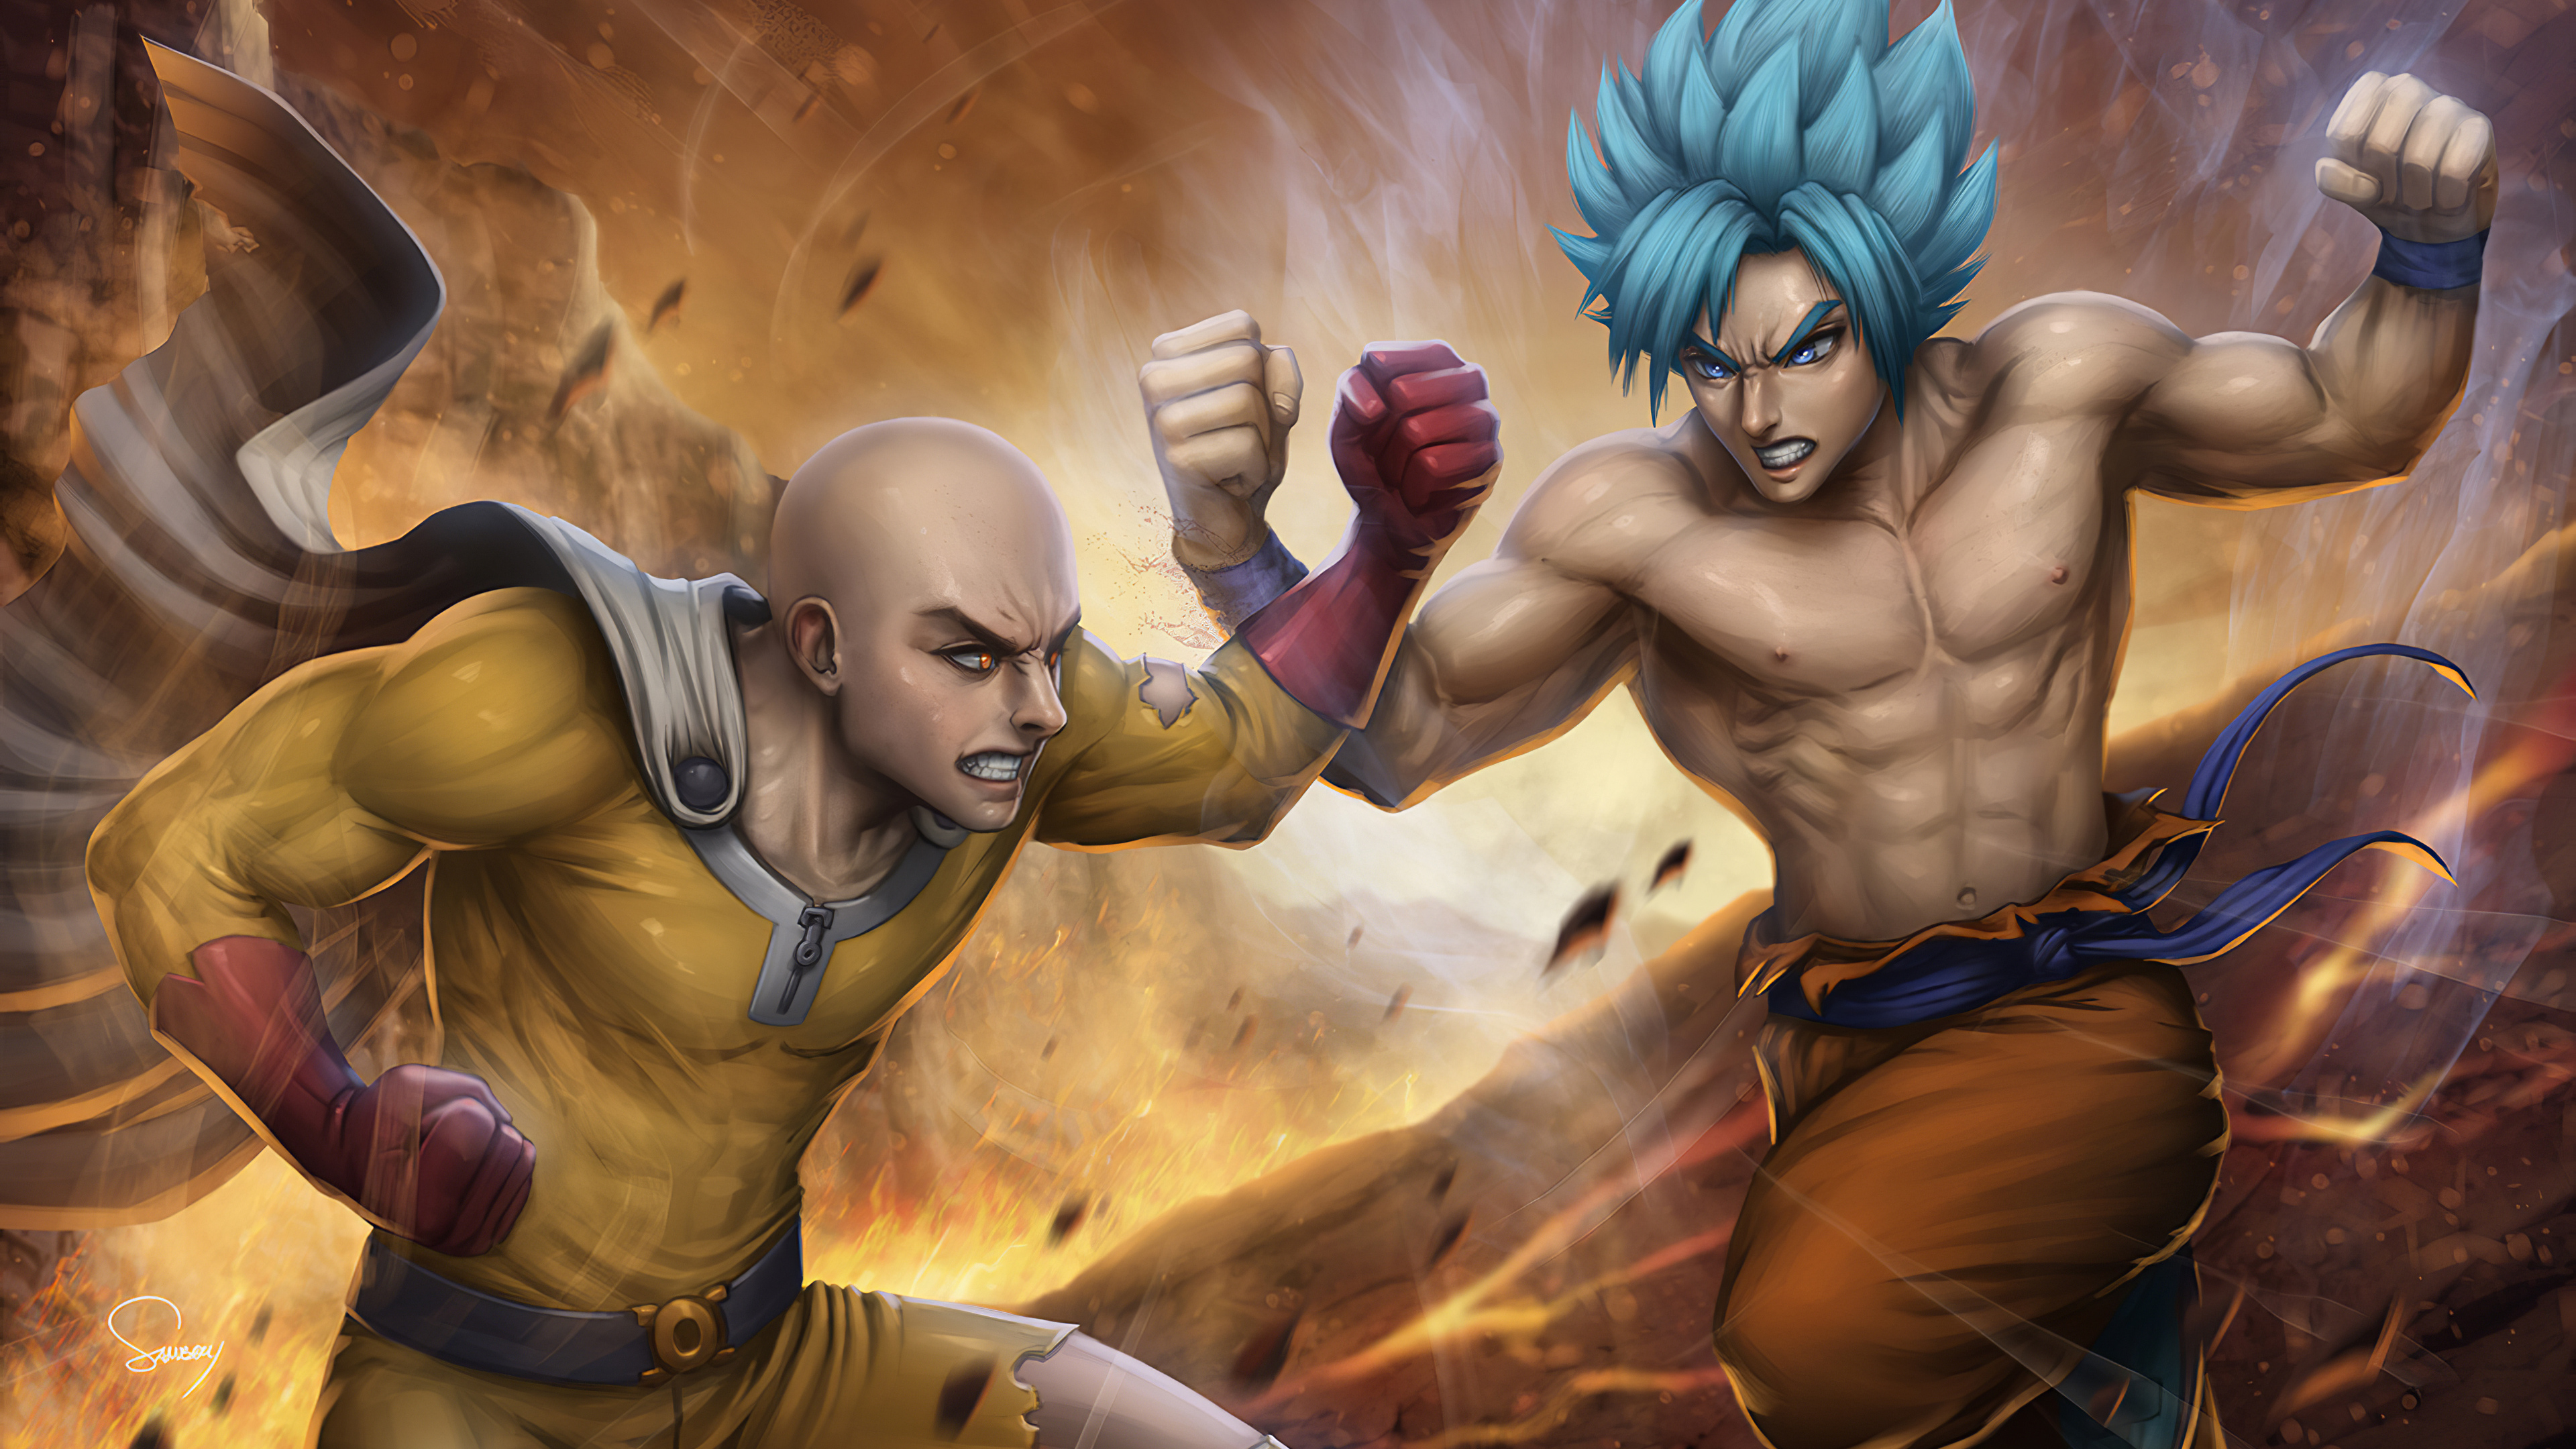 Saitama vs. Goku